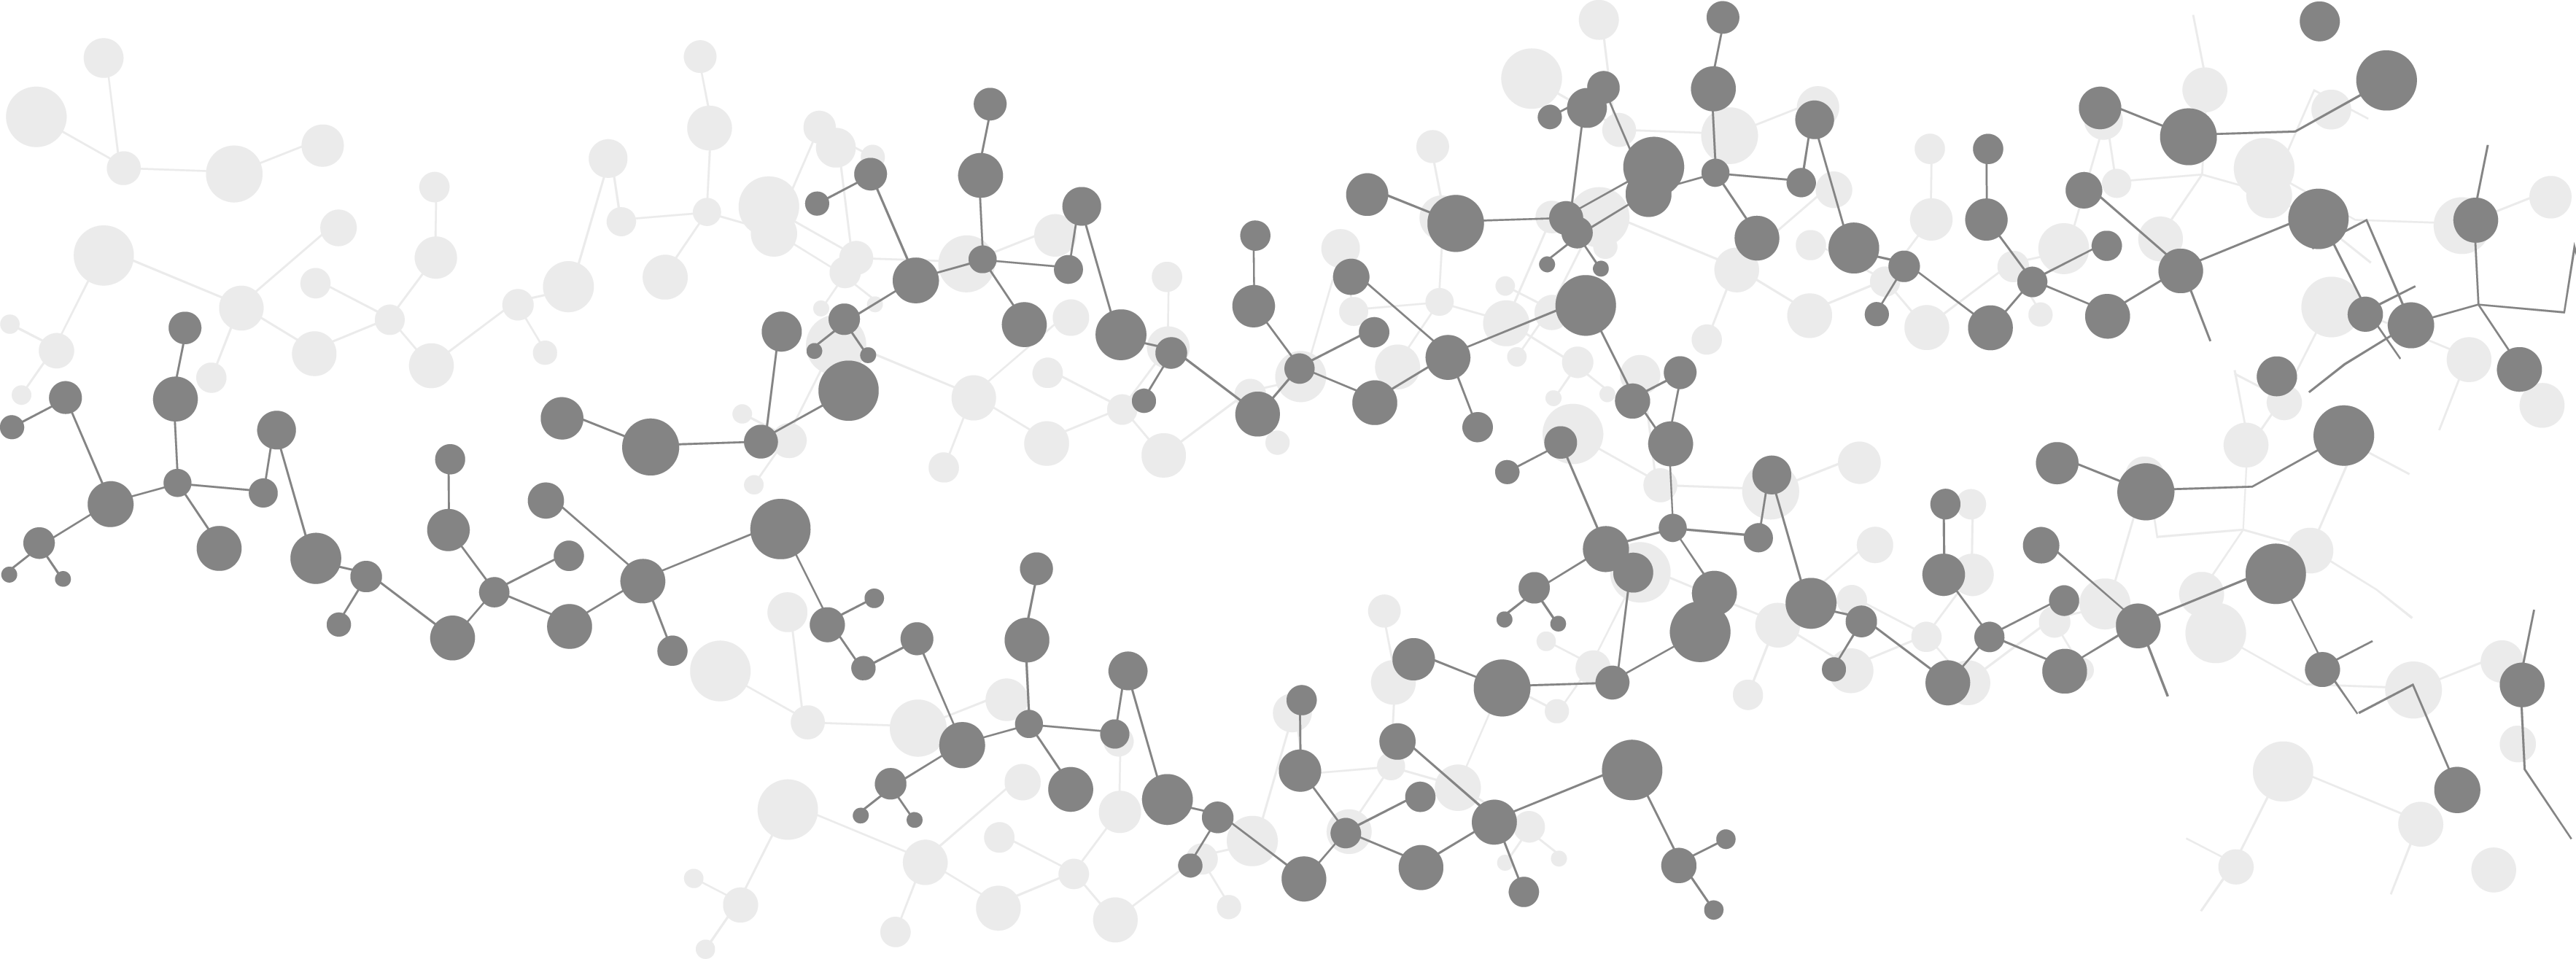 molecole clode